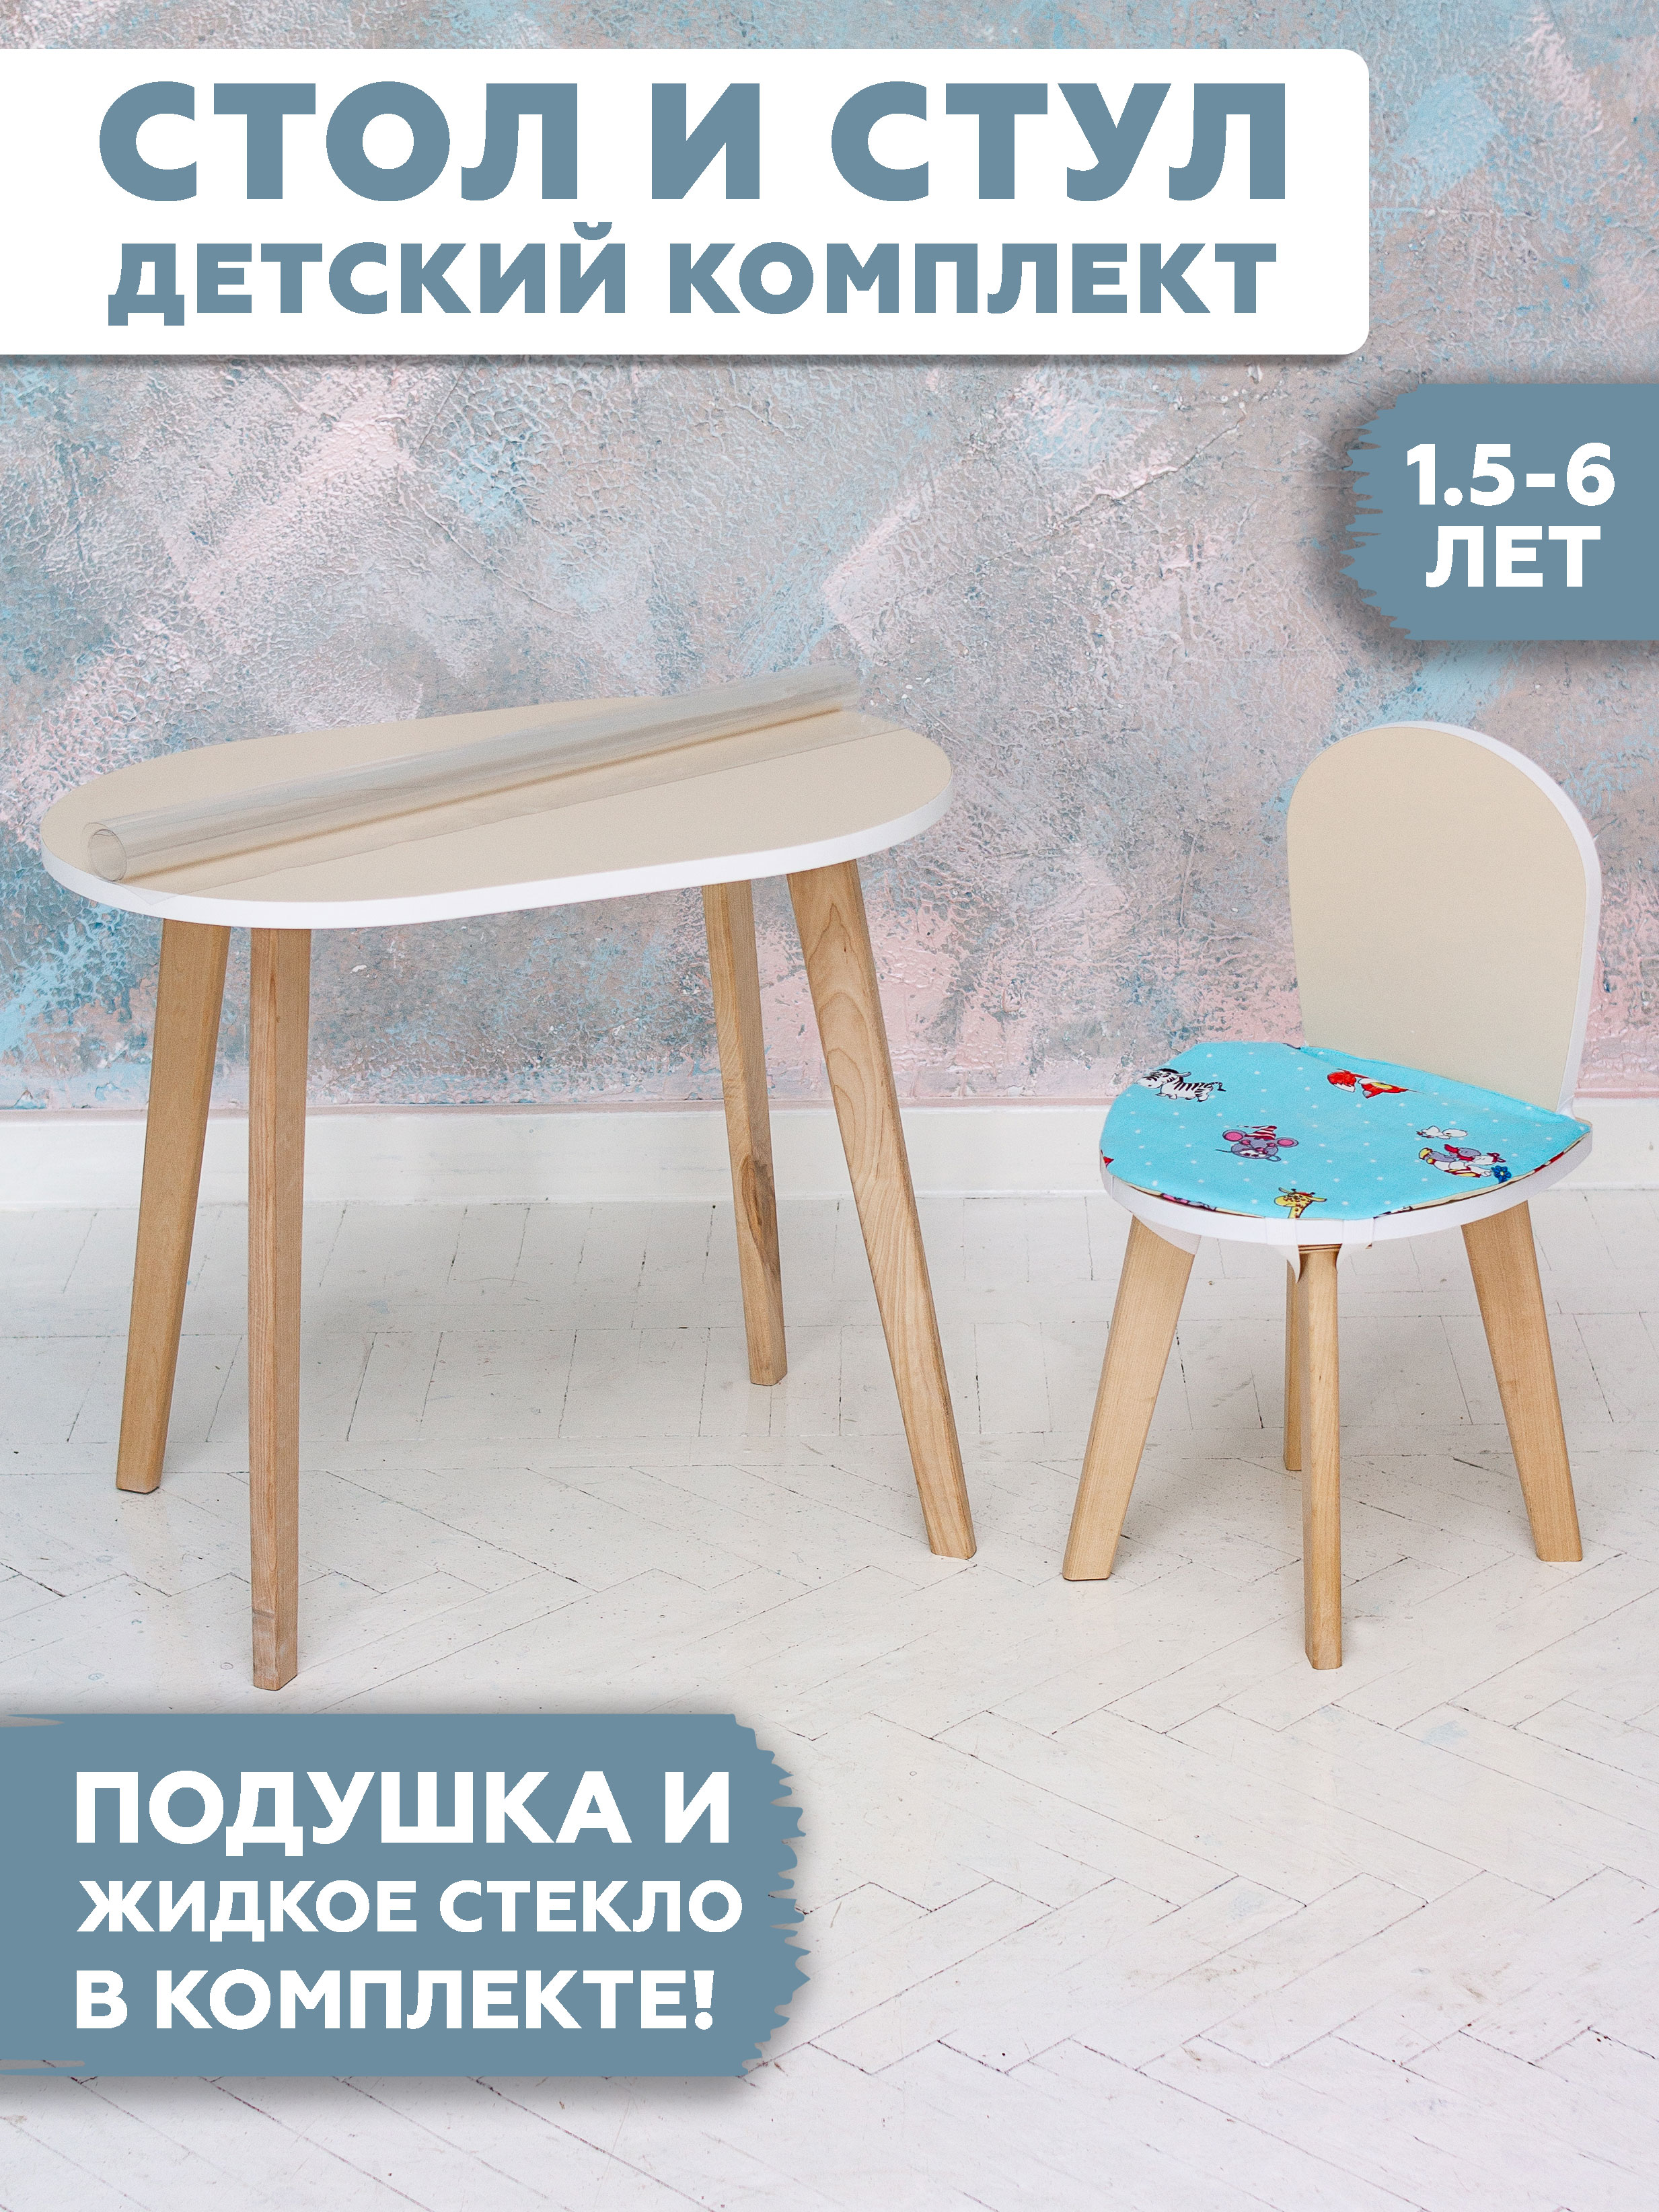 Комплект детской мебели RuLes столик и стульчик симба бежевый плюс